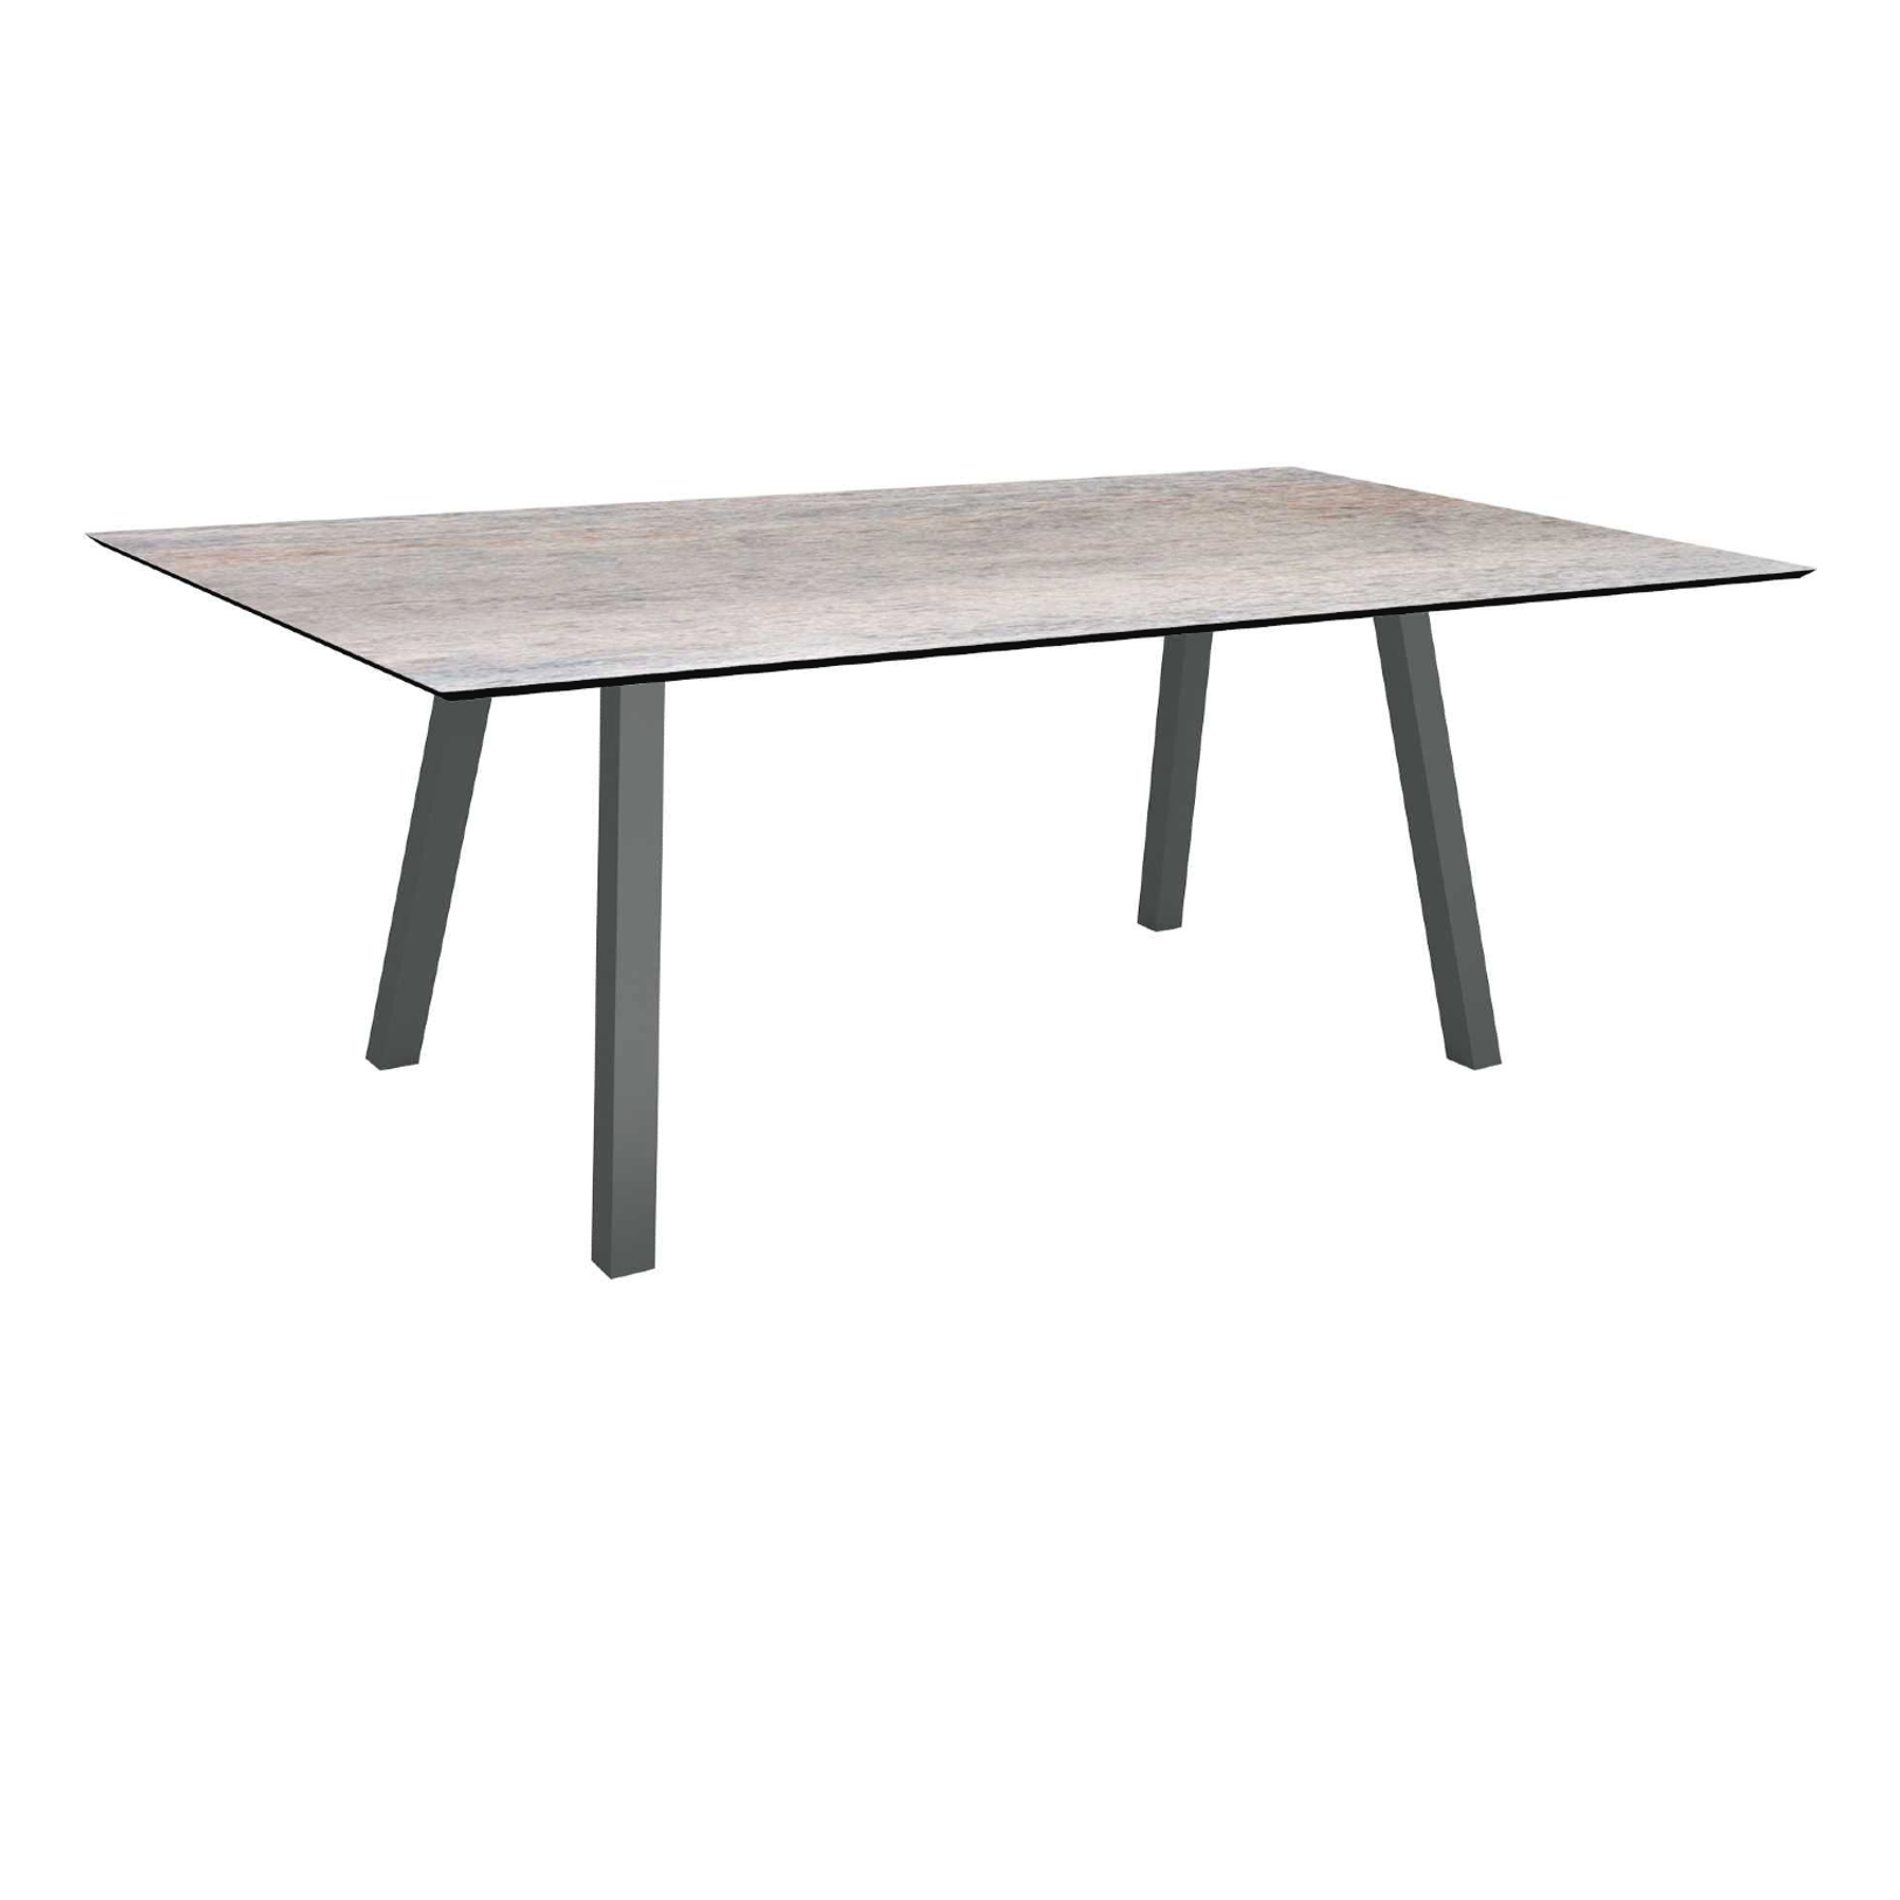 Stern Tisch "Interno", Größe 180x100cm, Alu anthrazit, Vierkantrohr, Tischplatte HPL Smoky